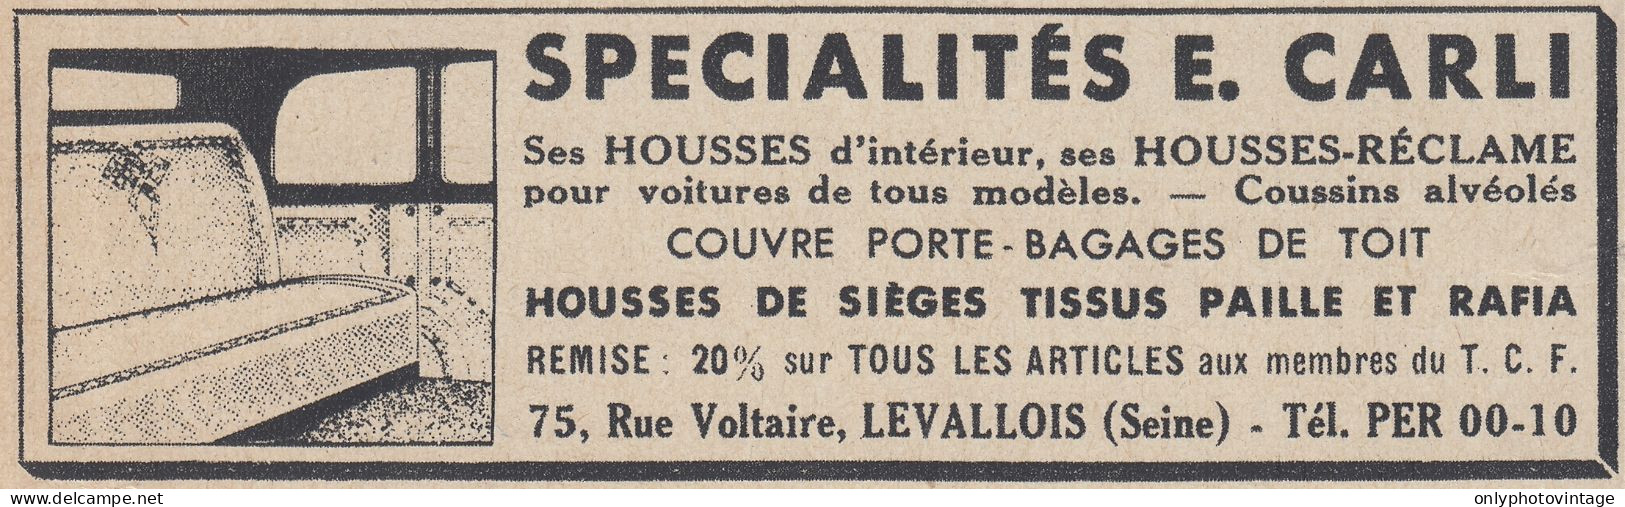 Sp�cialistes E. Carli - Levallois - 1938 Vintage Advertising - Pubblicit� - Publicidad